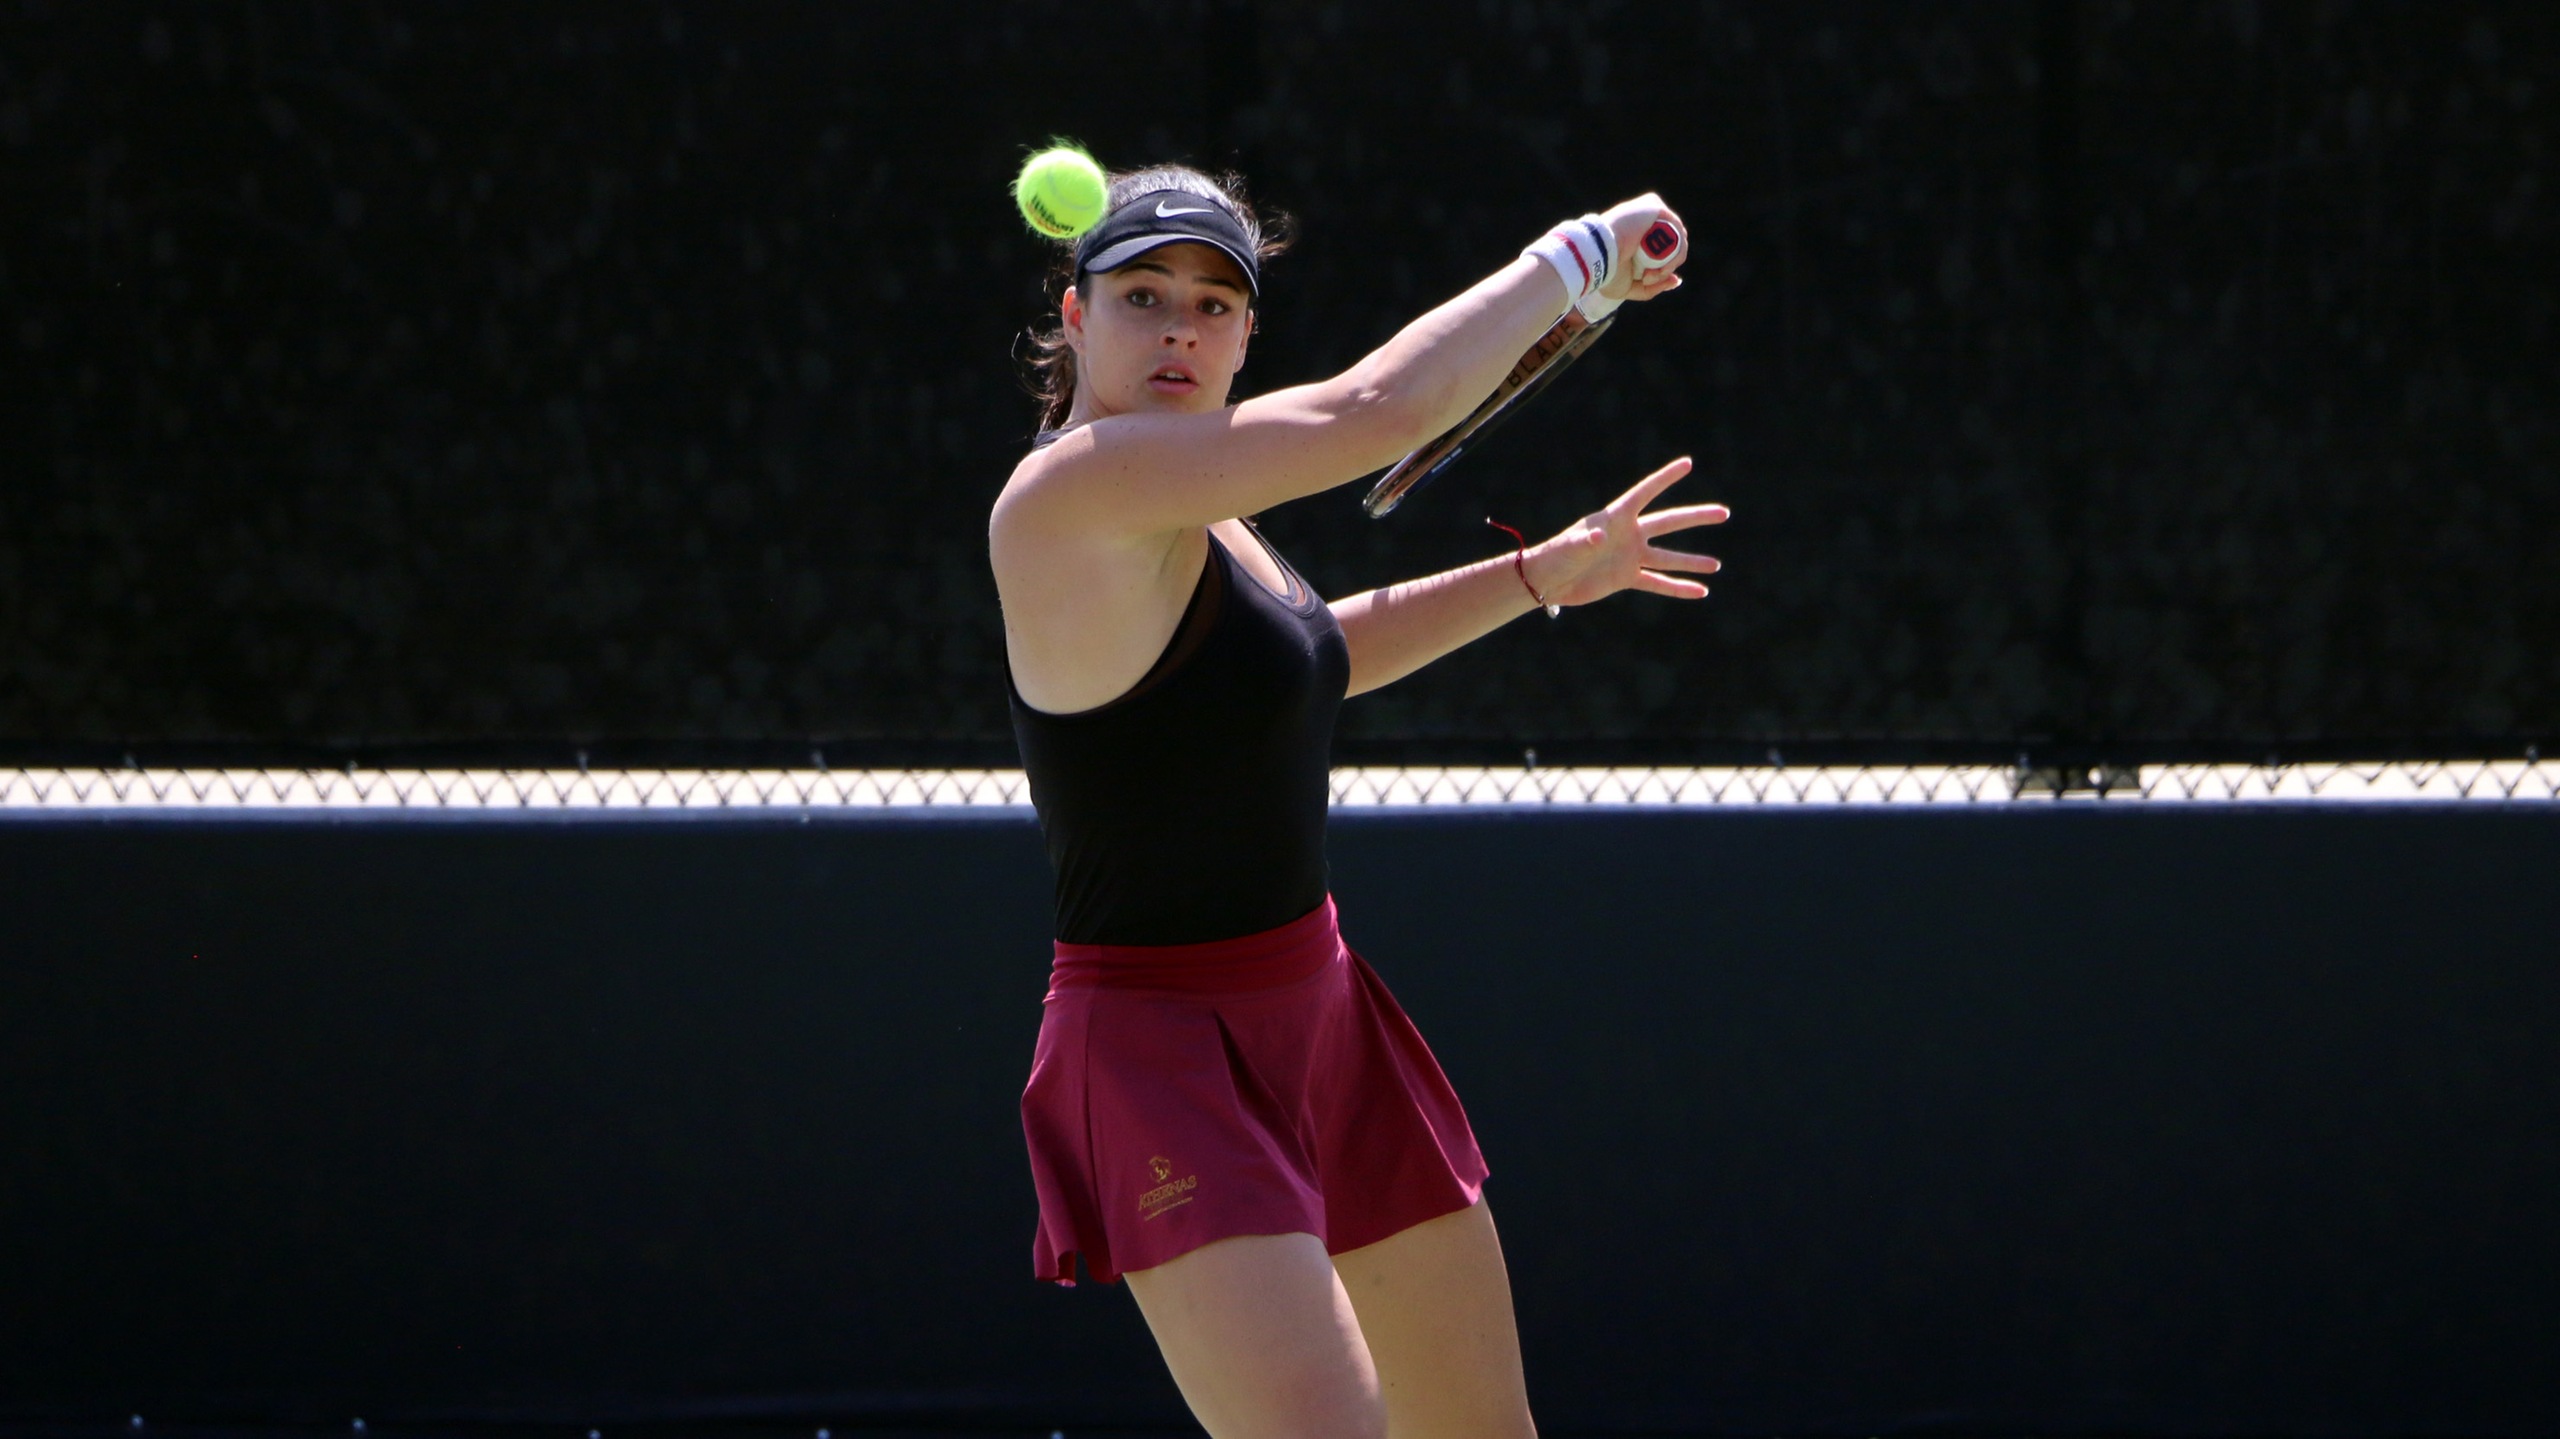 Jade Haller had a 6-1, 6-0 win at No. 4 singles